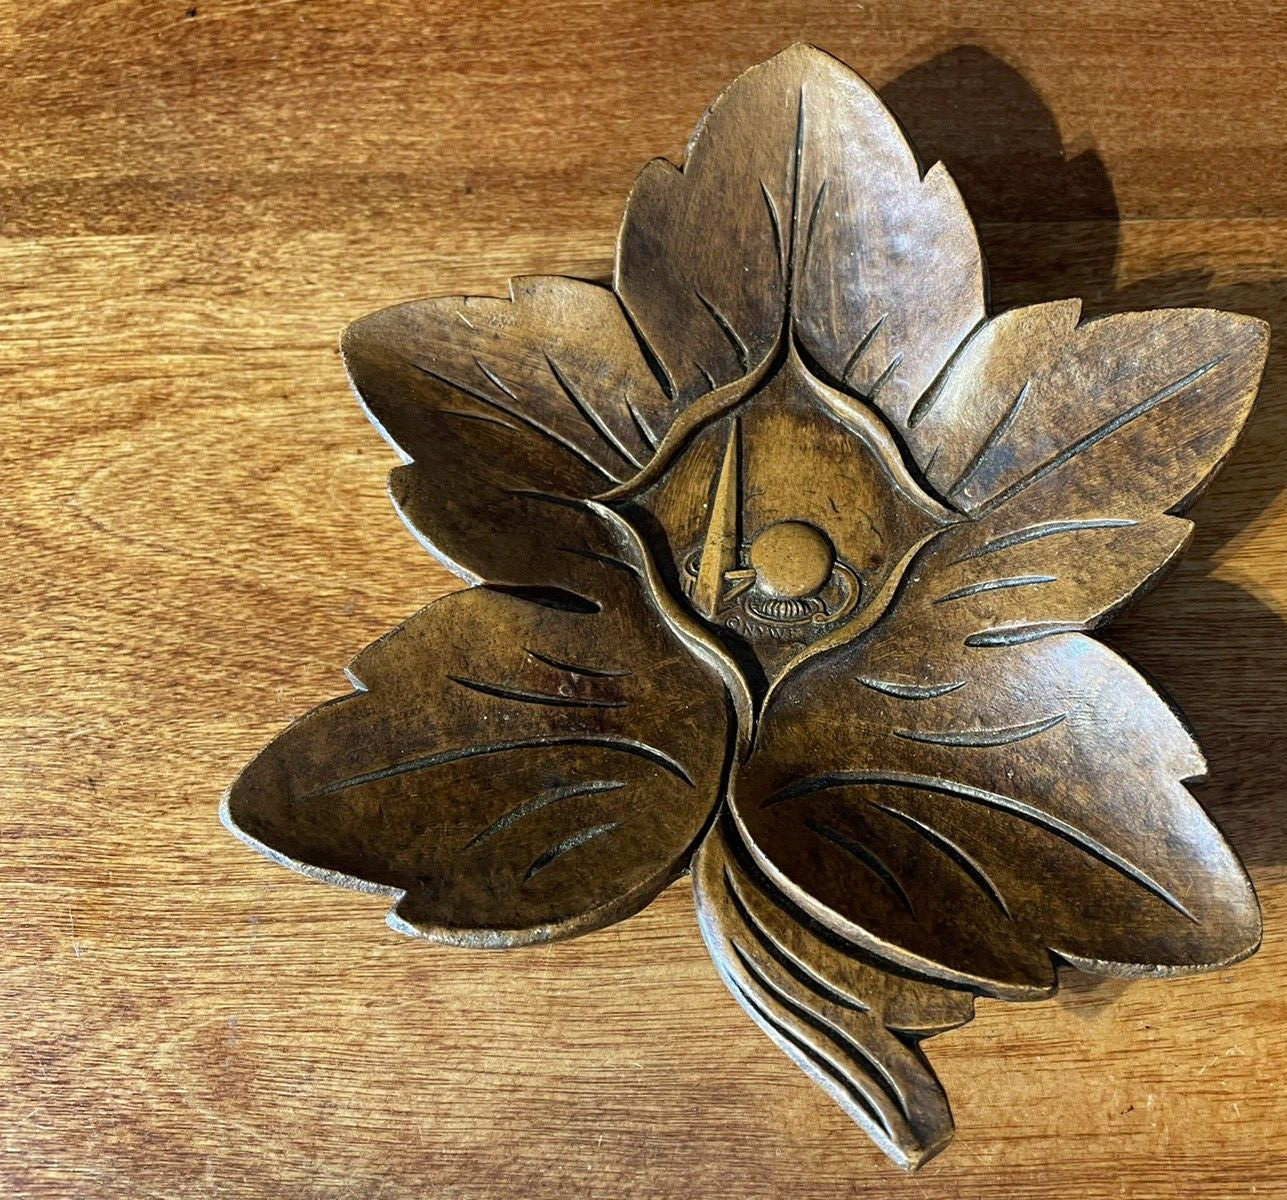 Vintage New York World's Fair Syroco Wood Leaf Trinket Dish Made in USA Syracuse